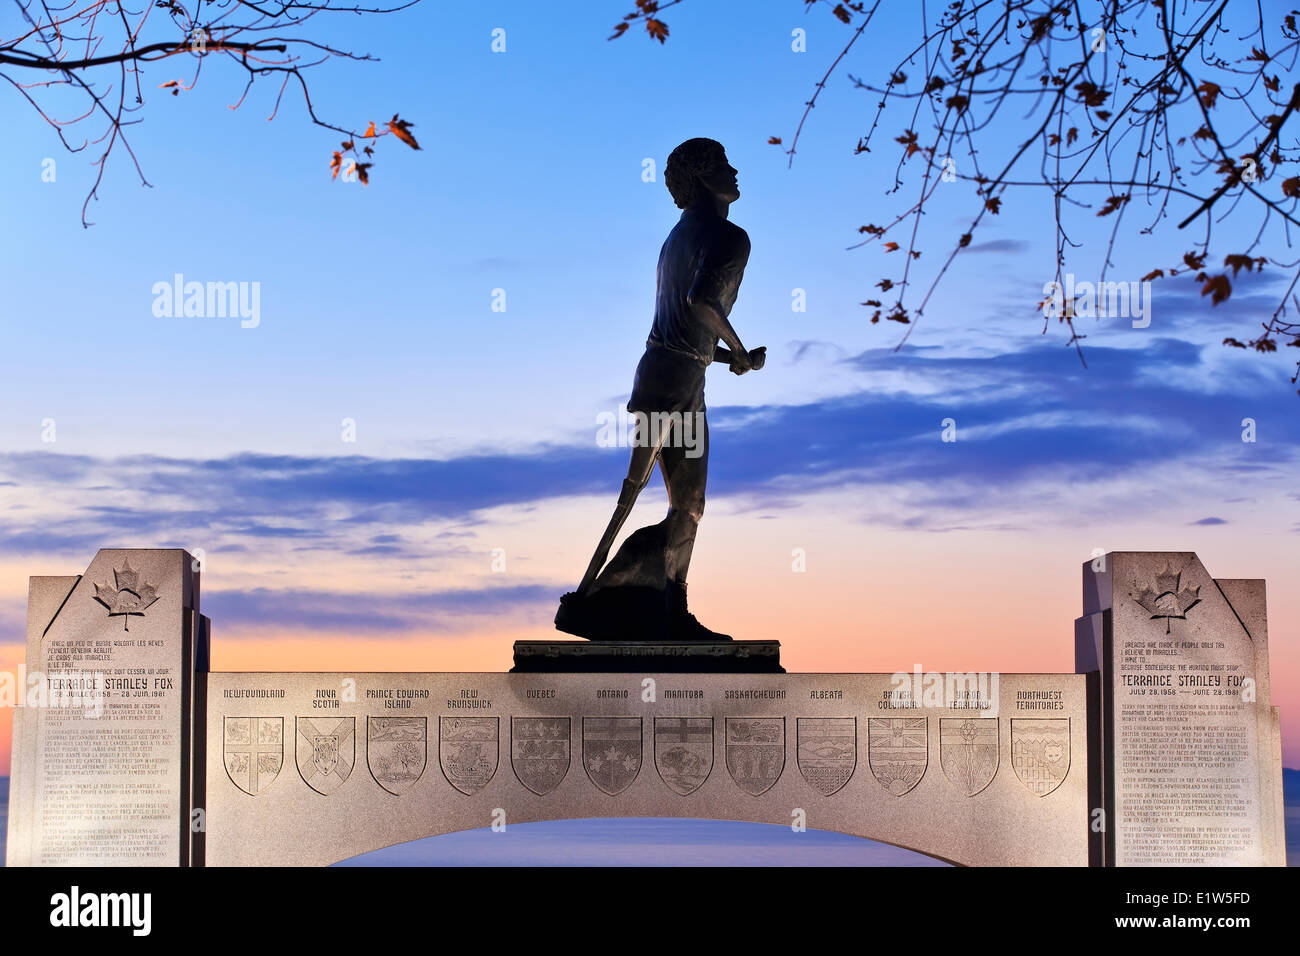 Terry Fox memorial statue at dawn, Thunder Bay, Ontario, Canada Stock Photo